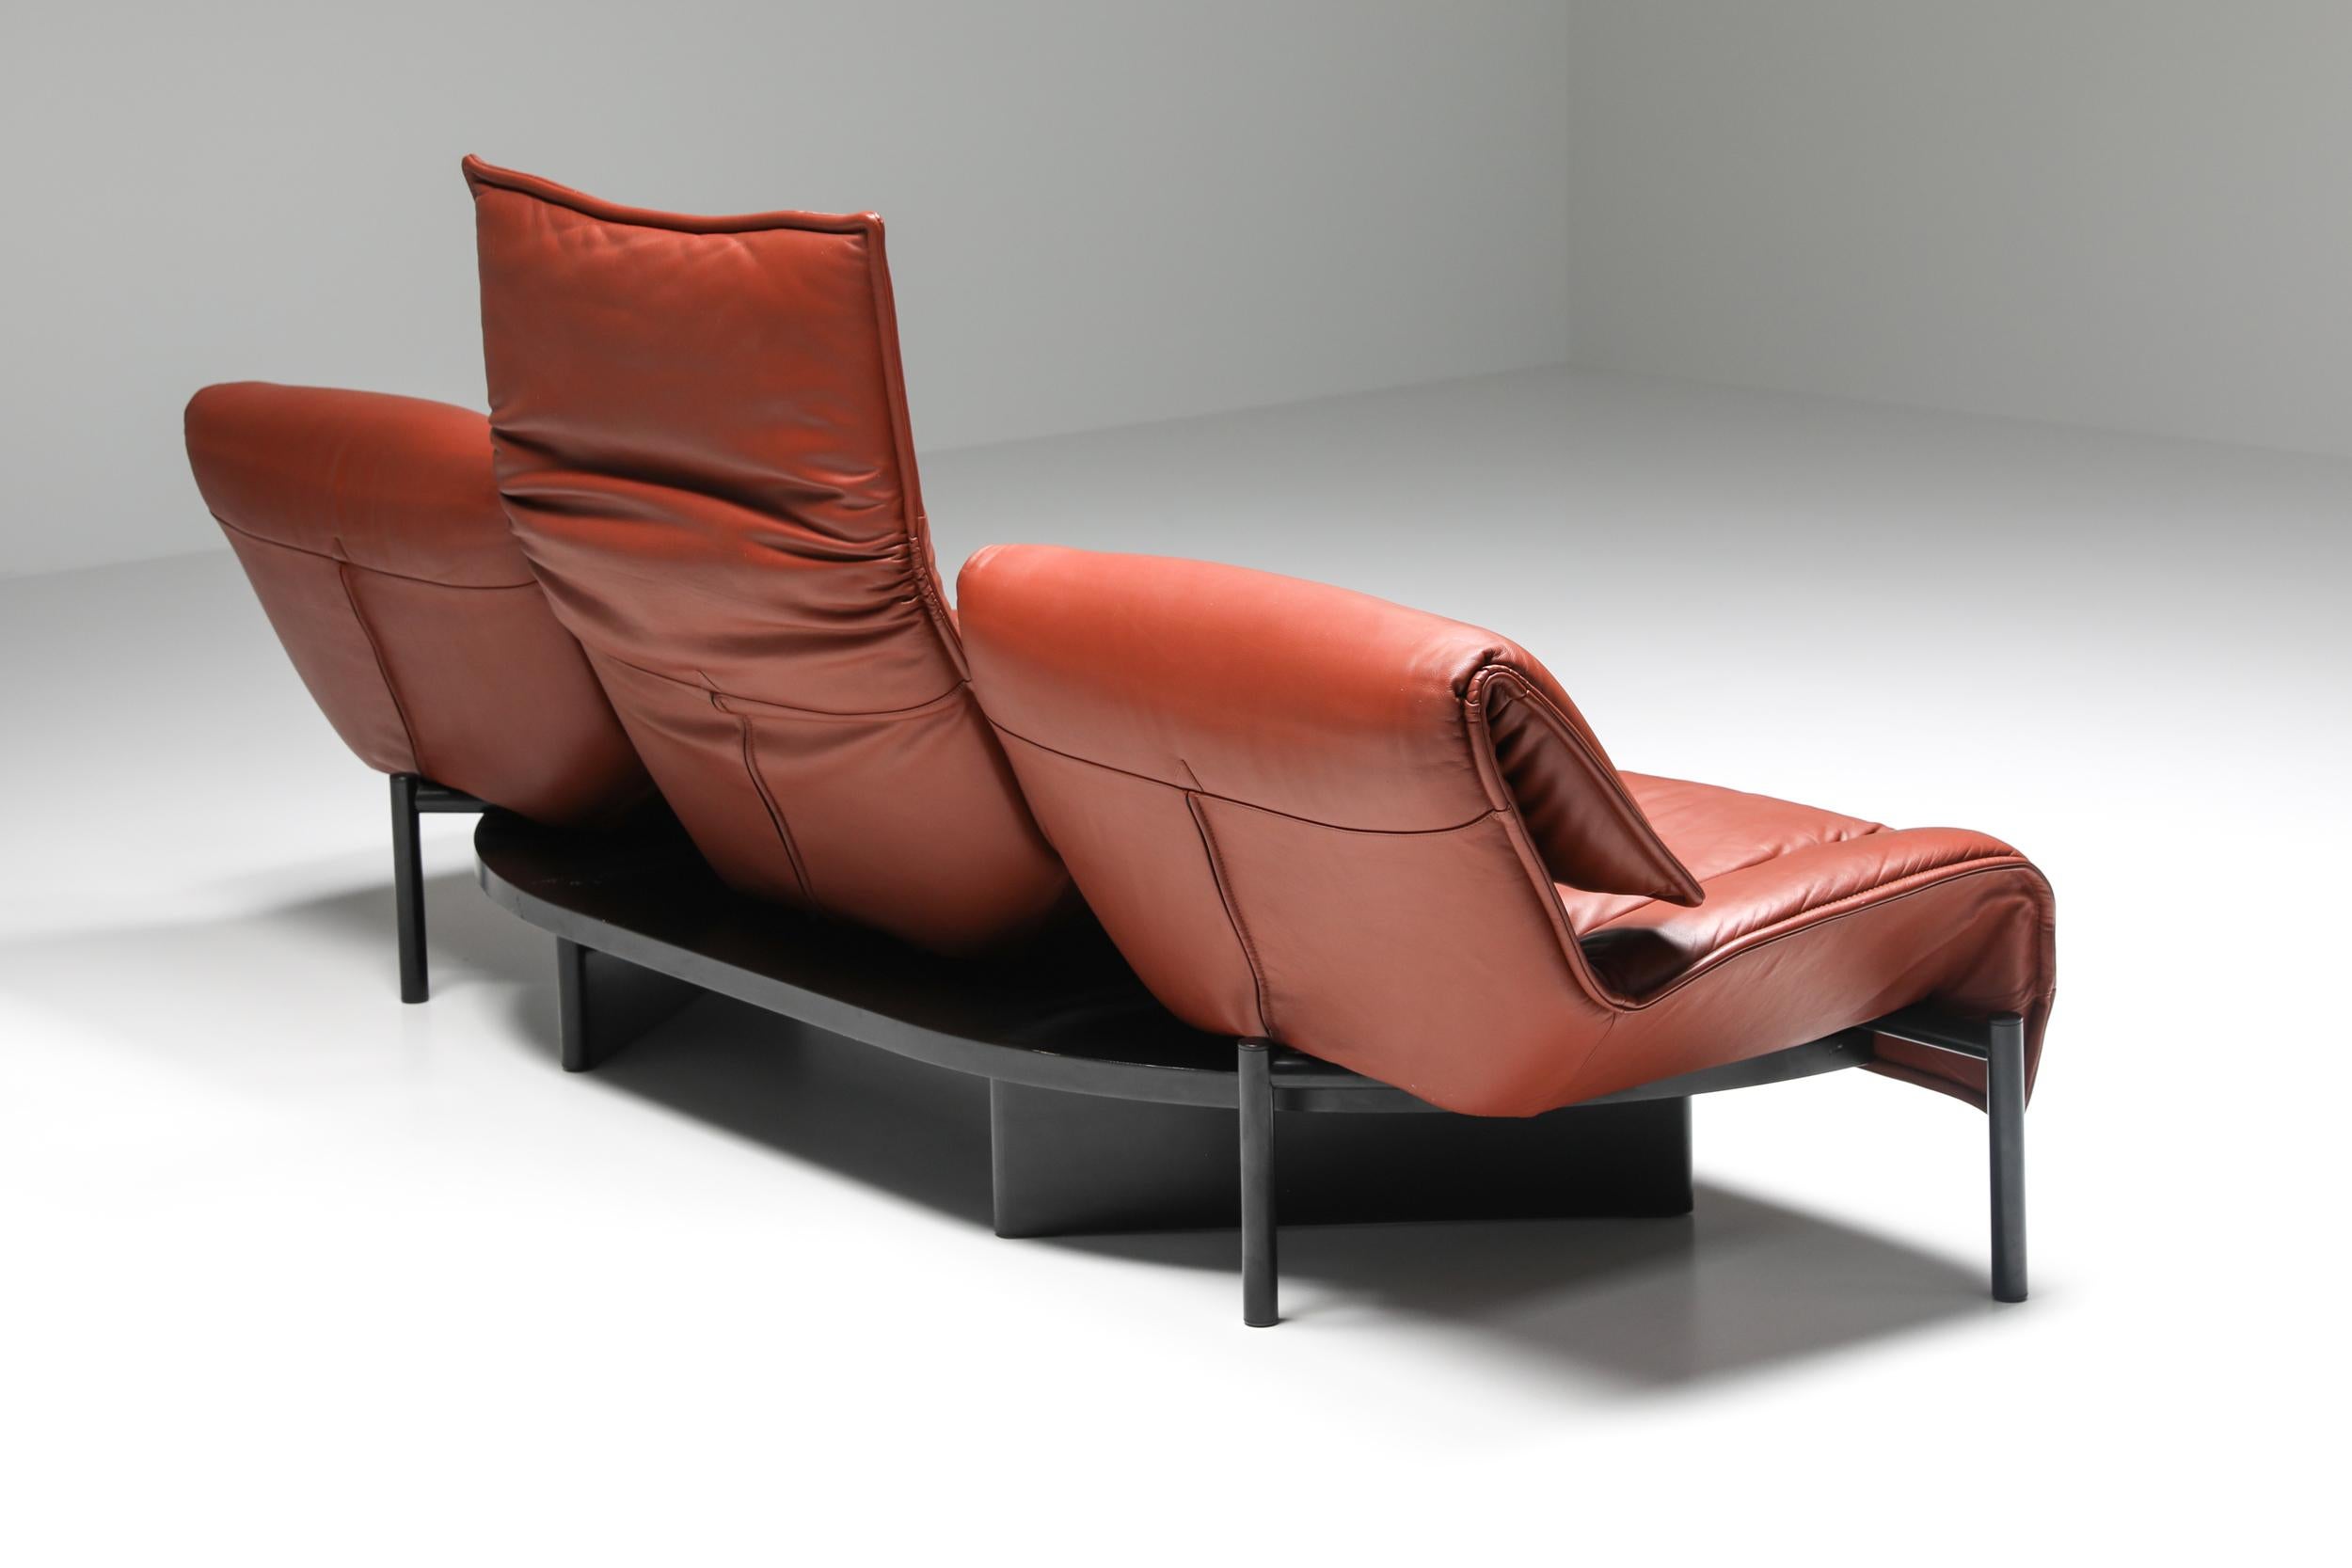 Late 20th Century Vico Magistretti Veranda Sofa for Cassina, Italian Design, Leather, 1970's